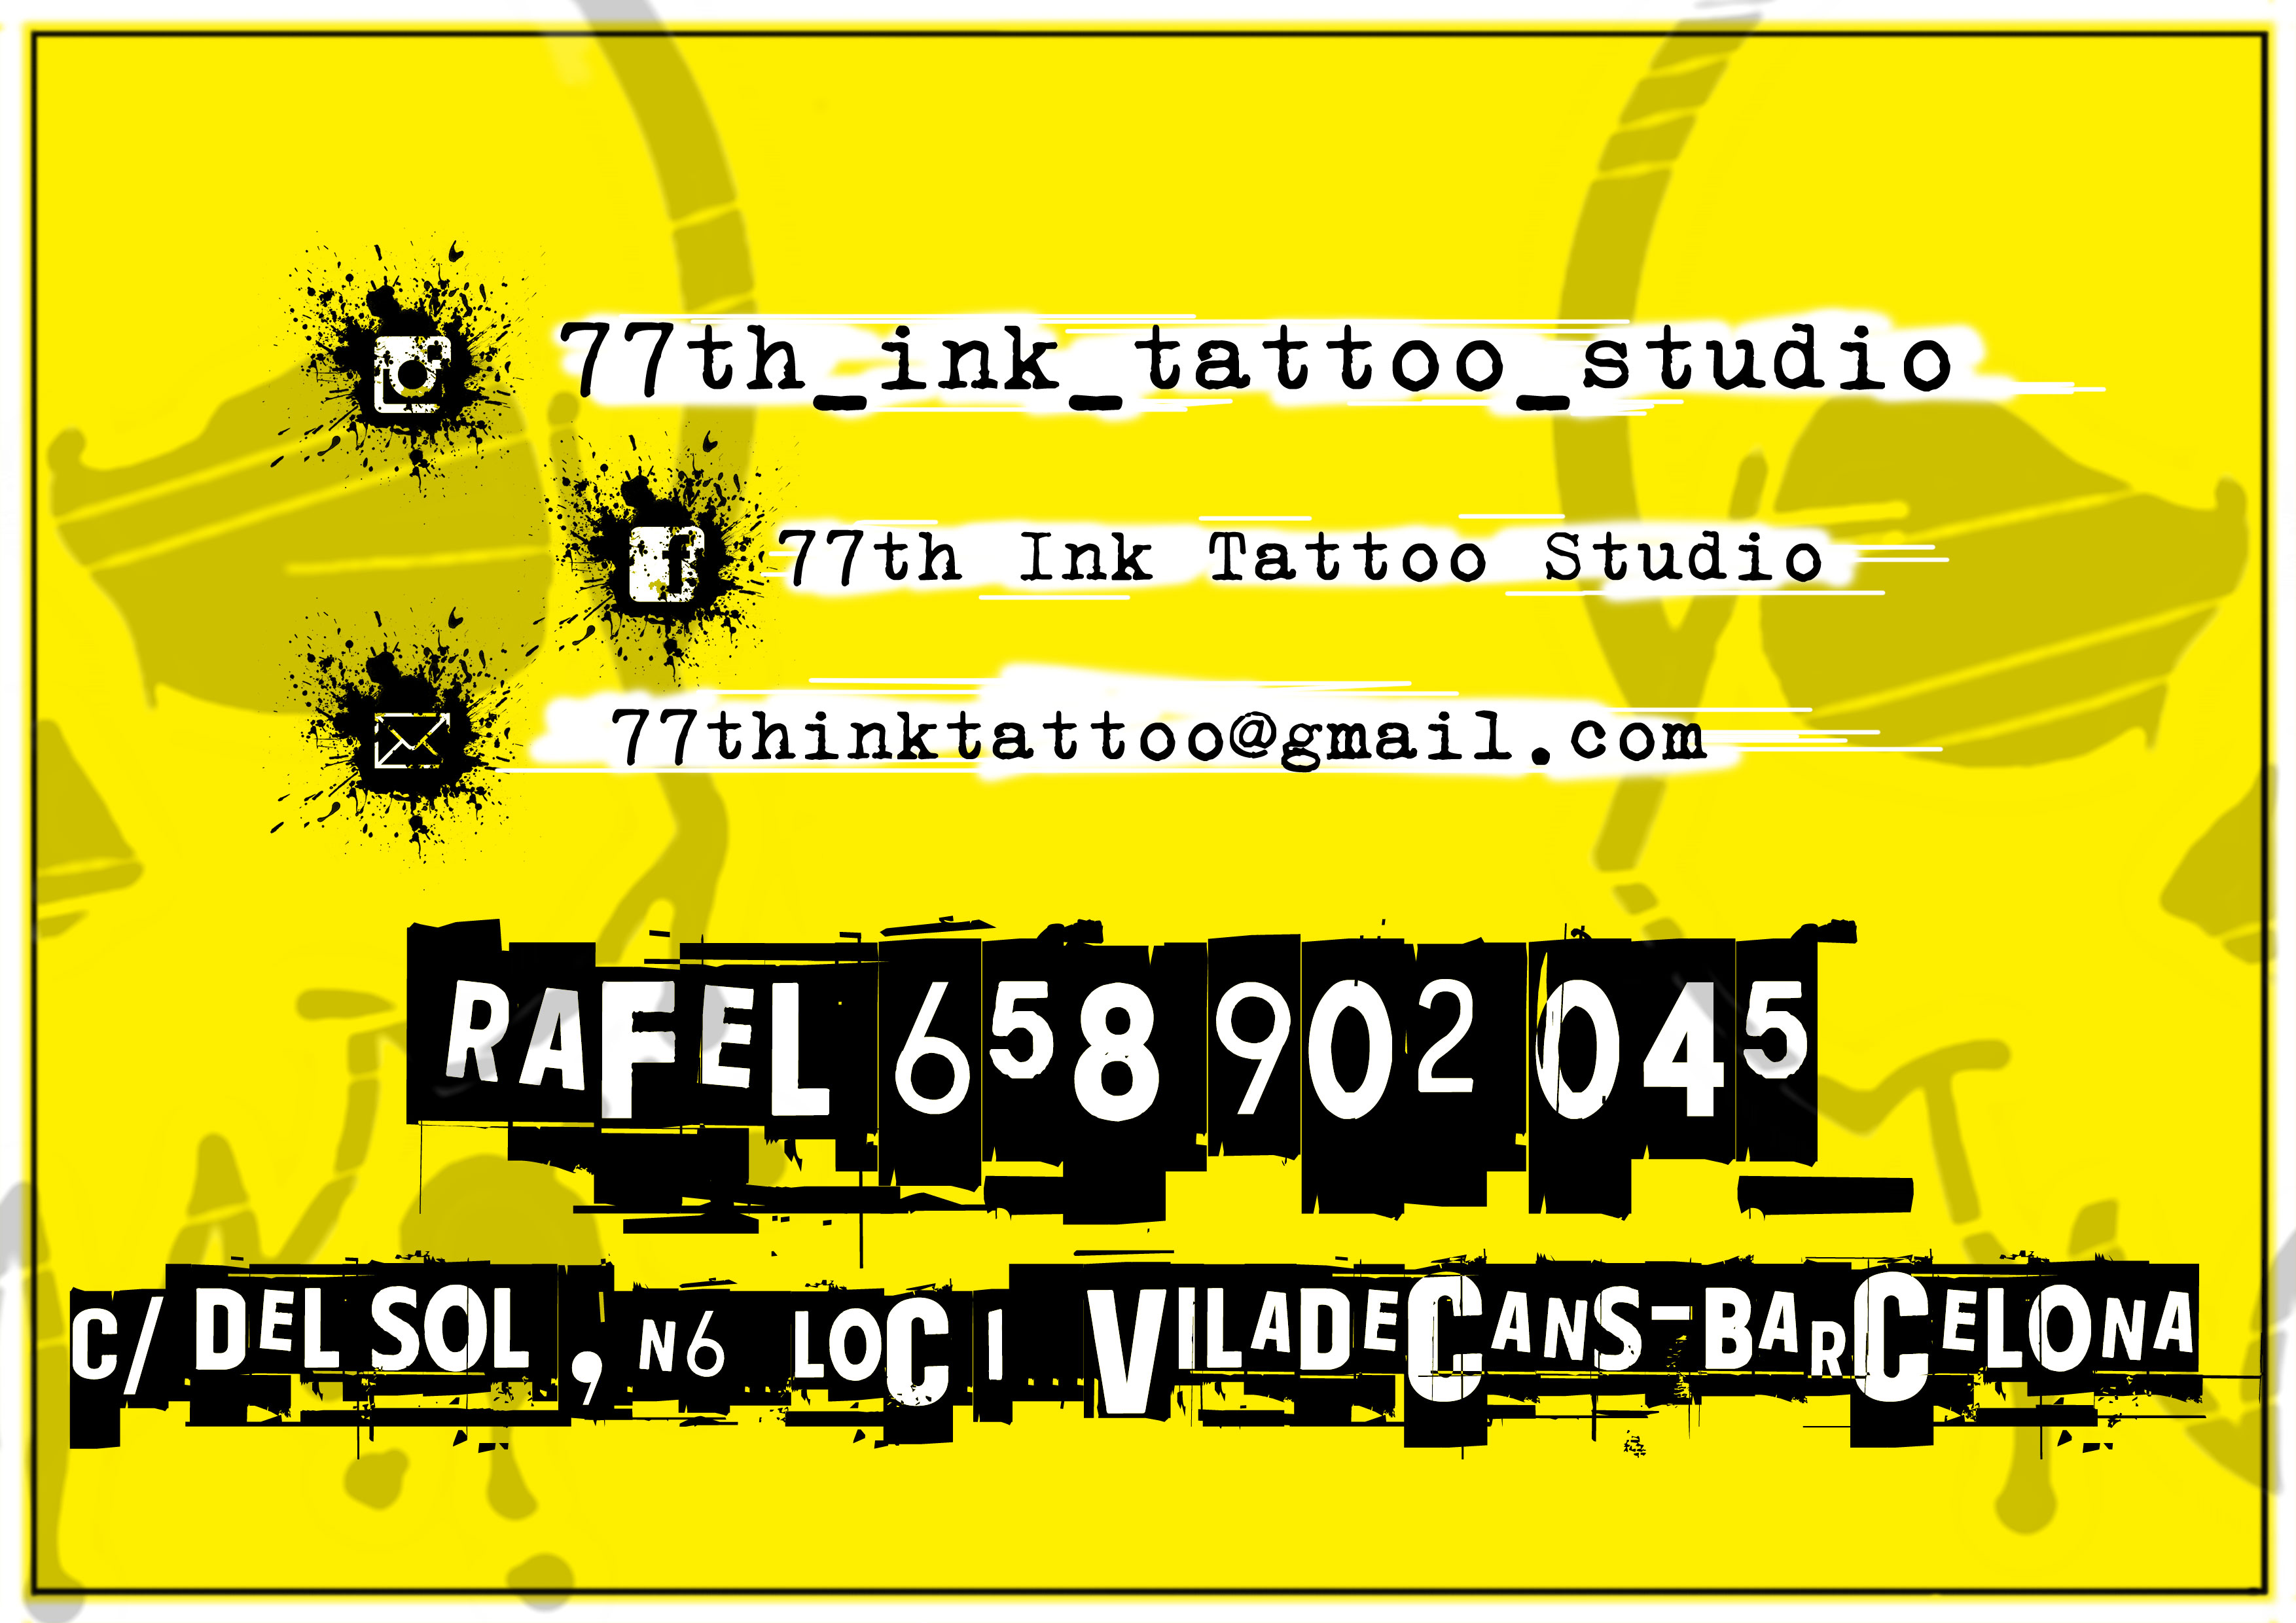 77th ink tattoo studio